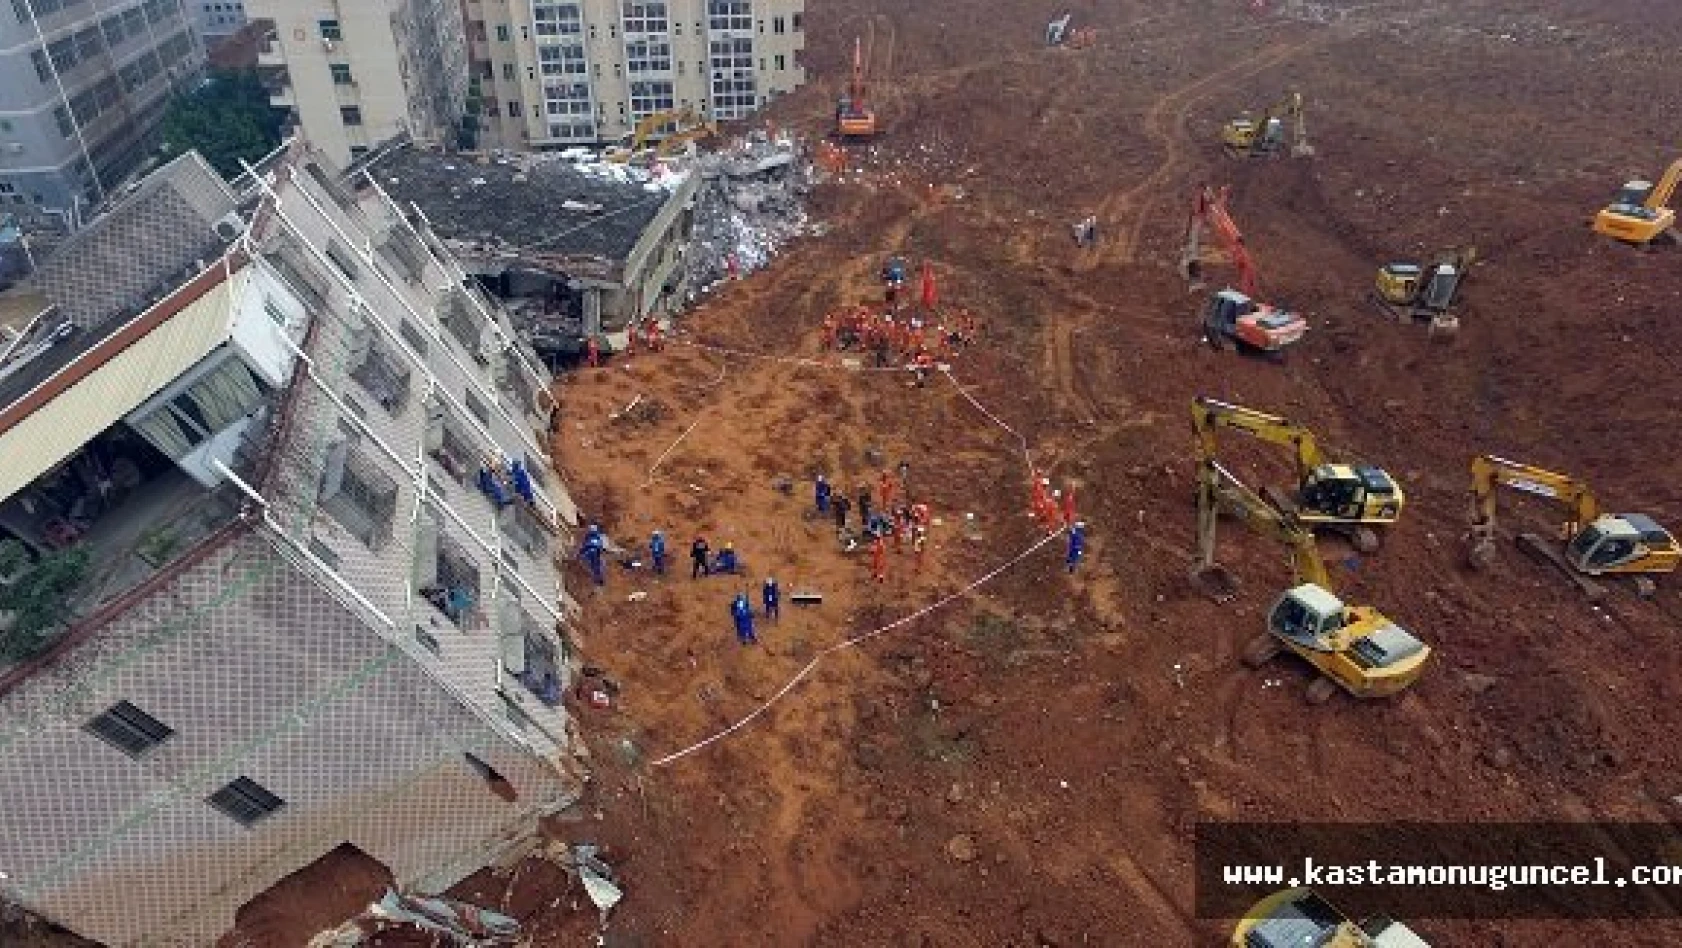 33 Bina Toprak Altında Kaldı: 91 Kayıp